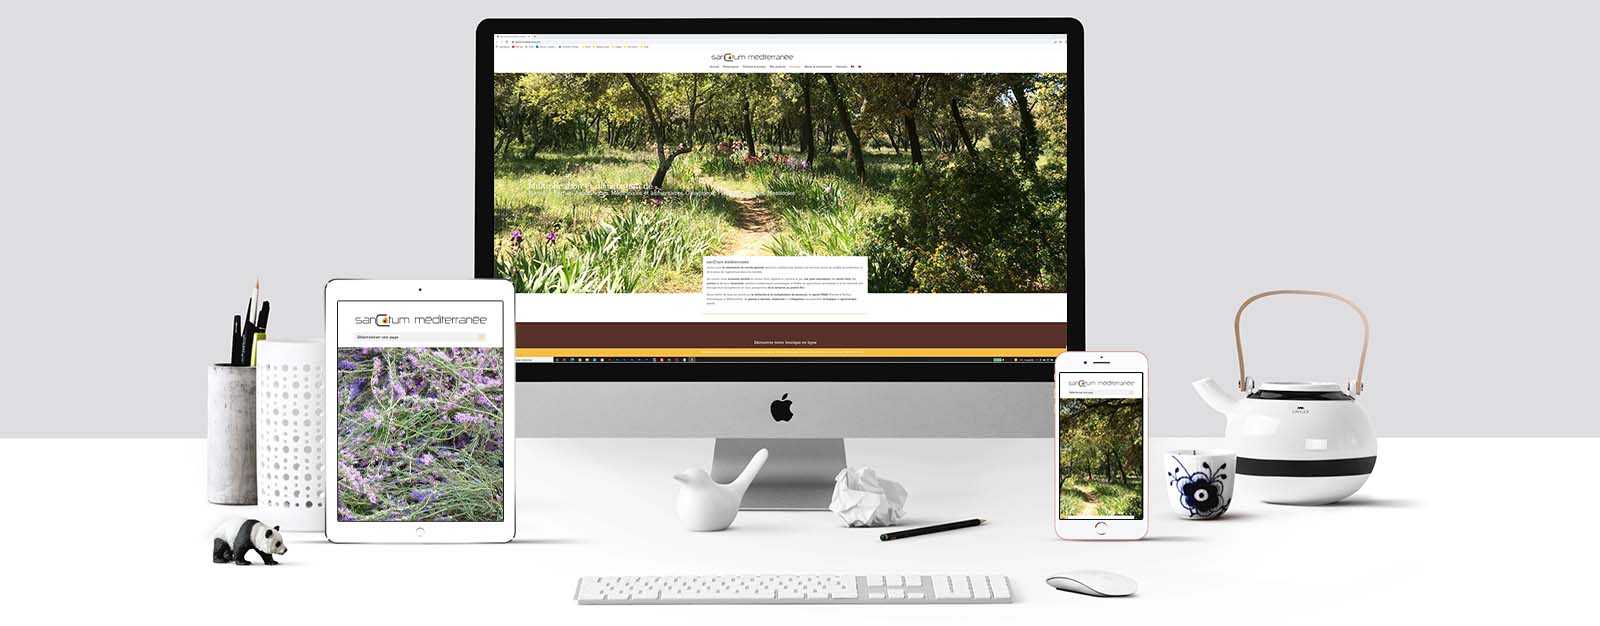 Le site Sanctum Méditerranée sur un écran Mac, un écran de tablette et un écran d'Iphone